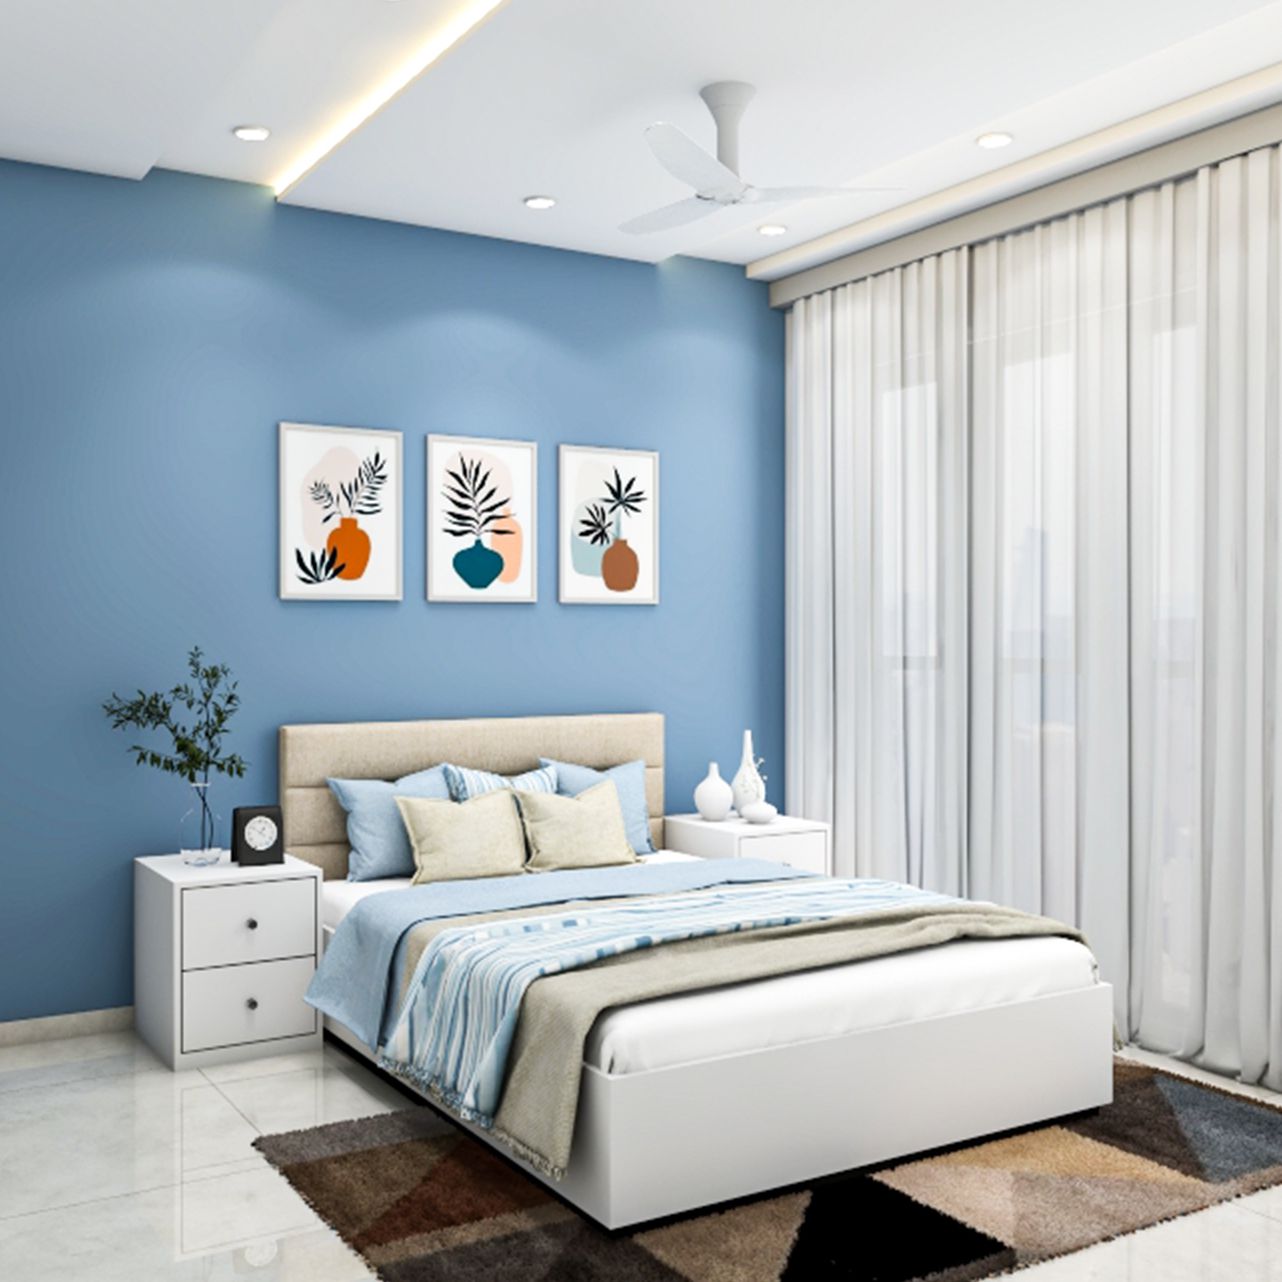 Blue Modern Boy's Room Design With Rug